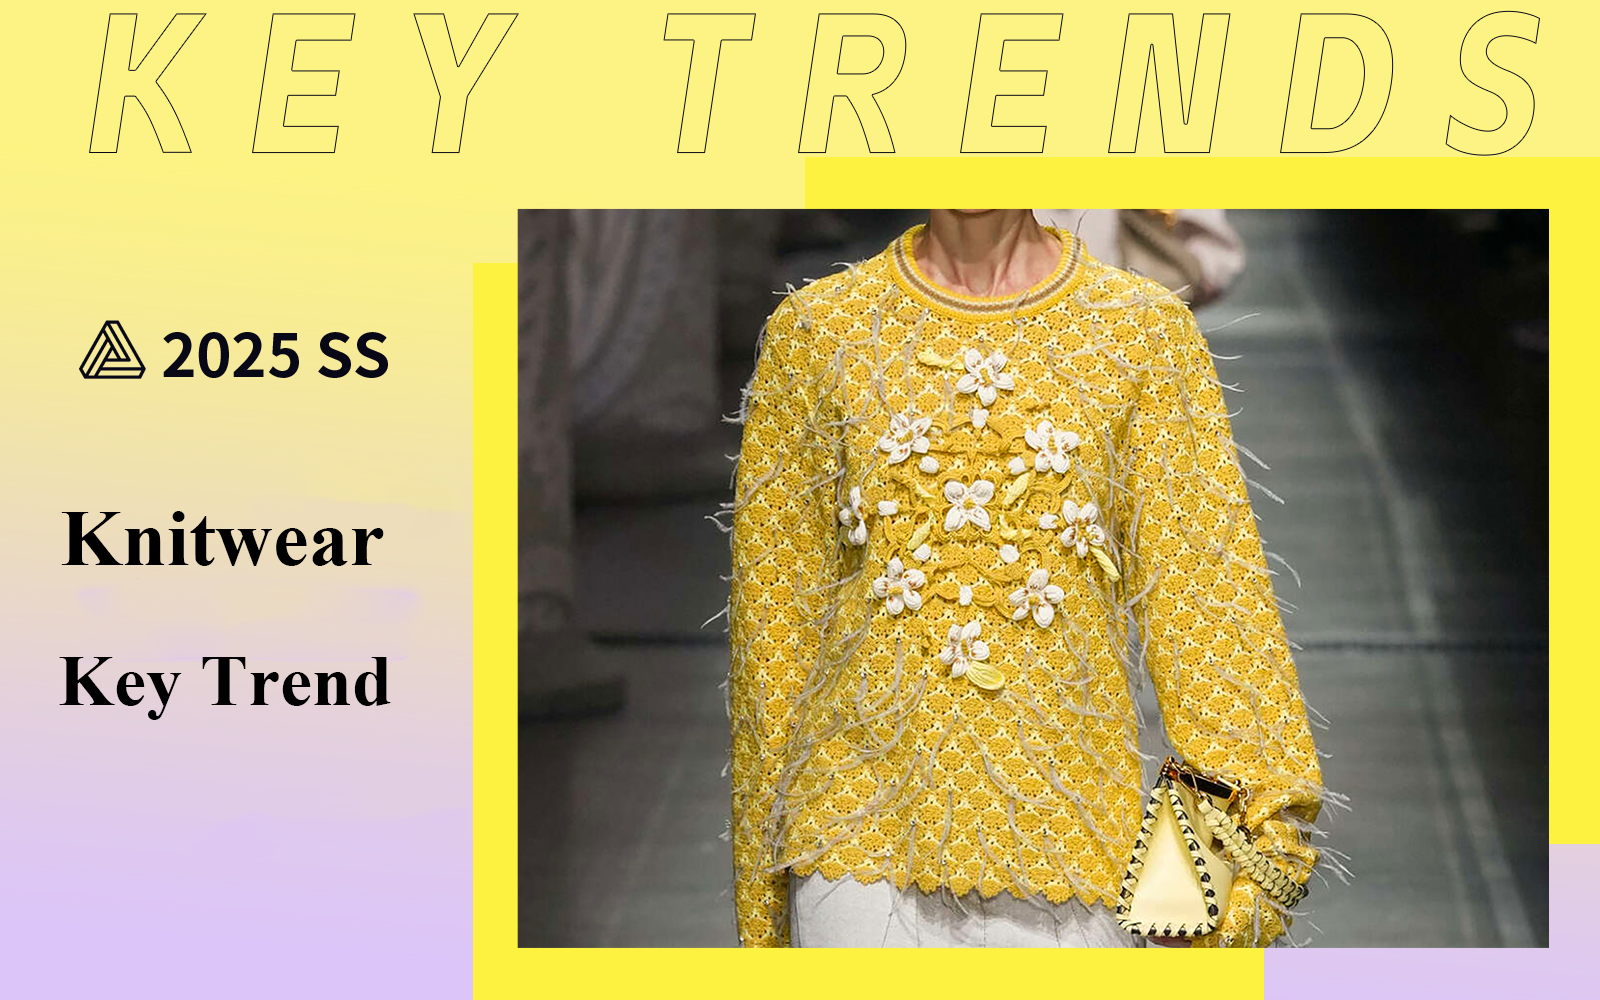 Key Item -- S/S 2025 Women's Knitwear Key Trends